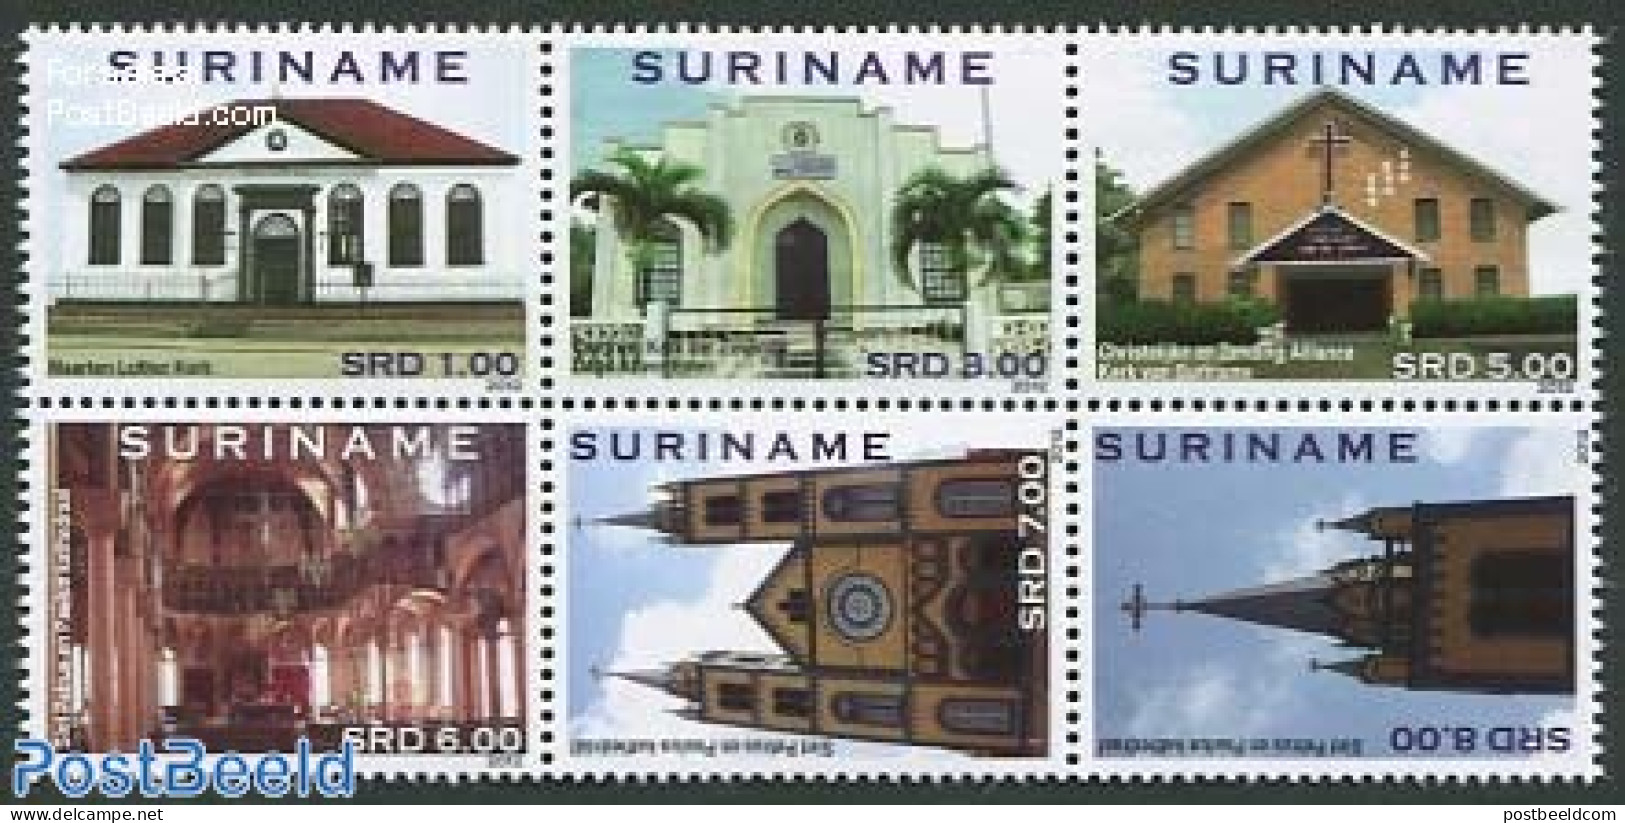 Suriname, Republic 2012 Churches 6v [++], Mint NH, Religion - Churches, Temples, Mosques, Synagogues - Eglises Et Cathédrales